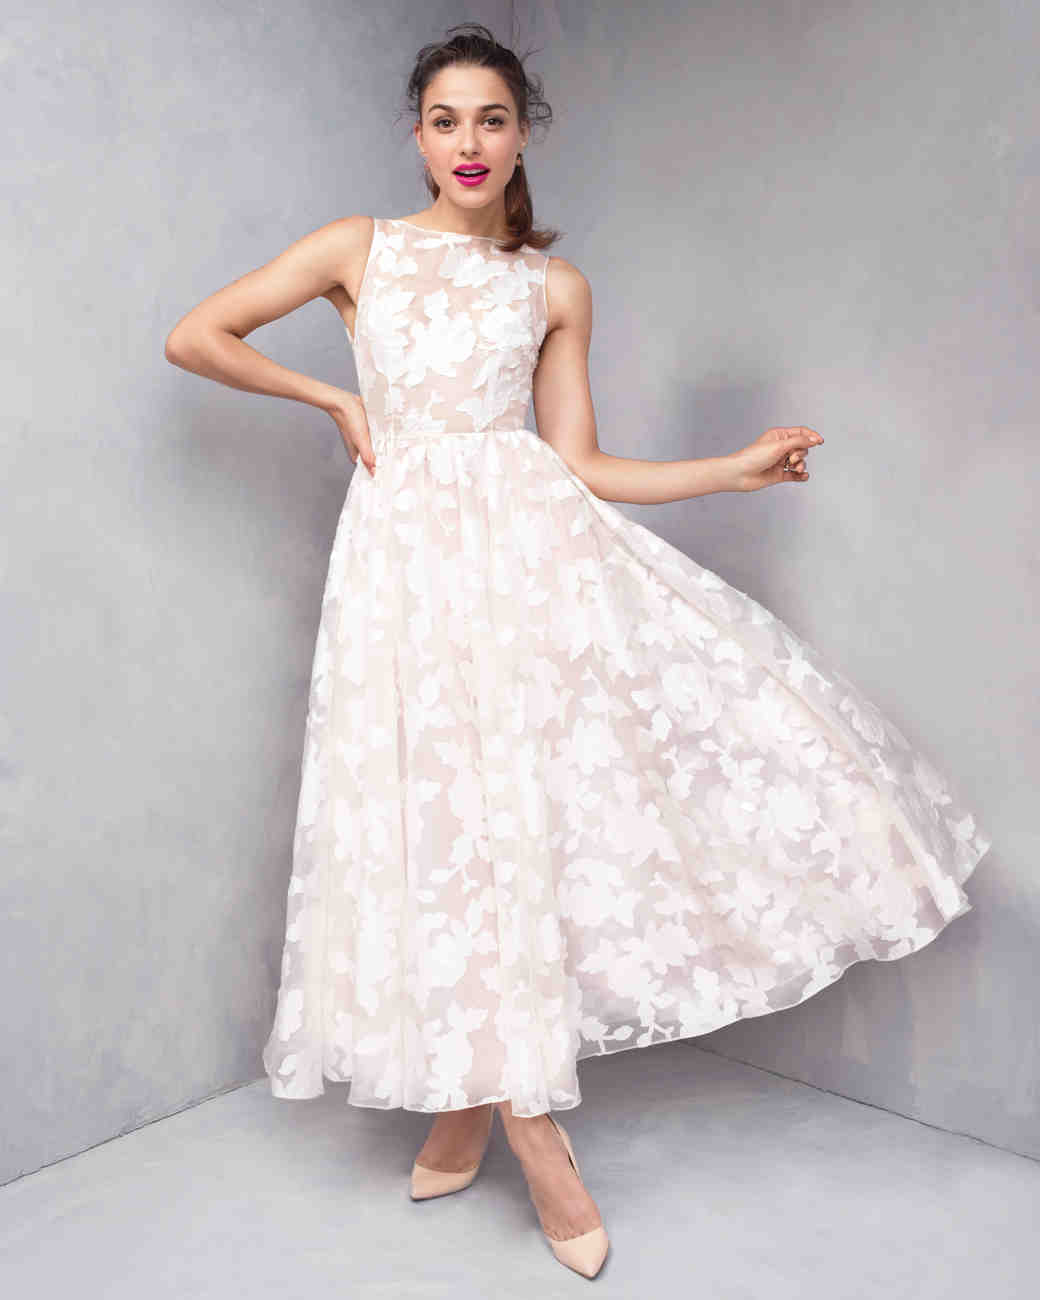 Wedding Dress Styles, Two Ways | Martha Stewart Weddings